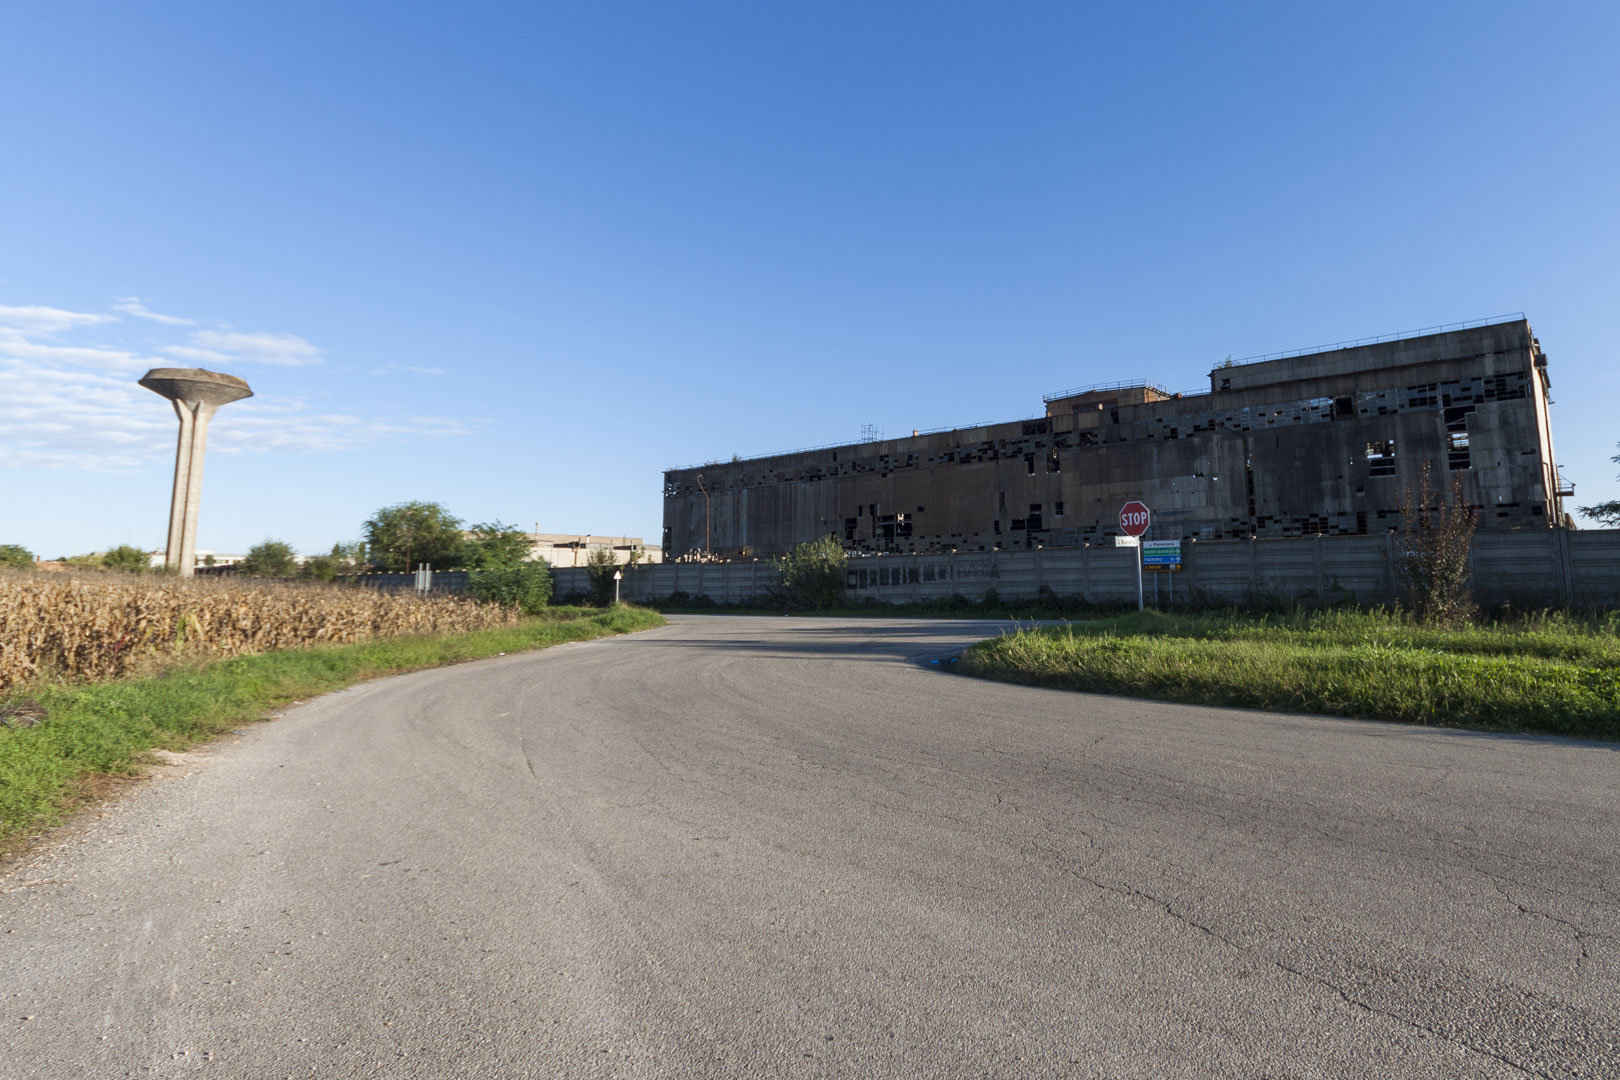 Abandoned “Teksid” Steel Mill – Carmagnola, Italy